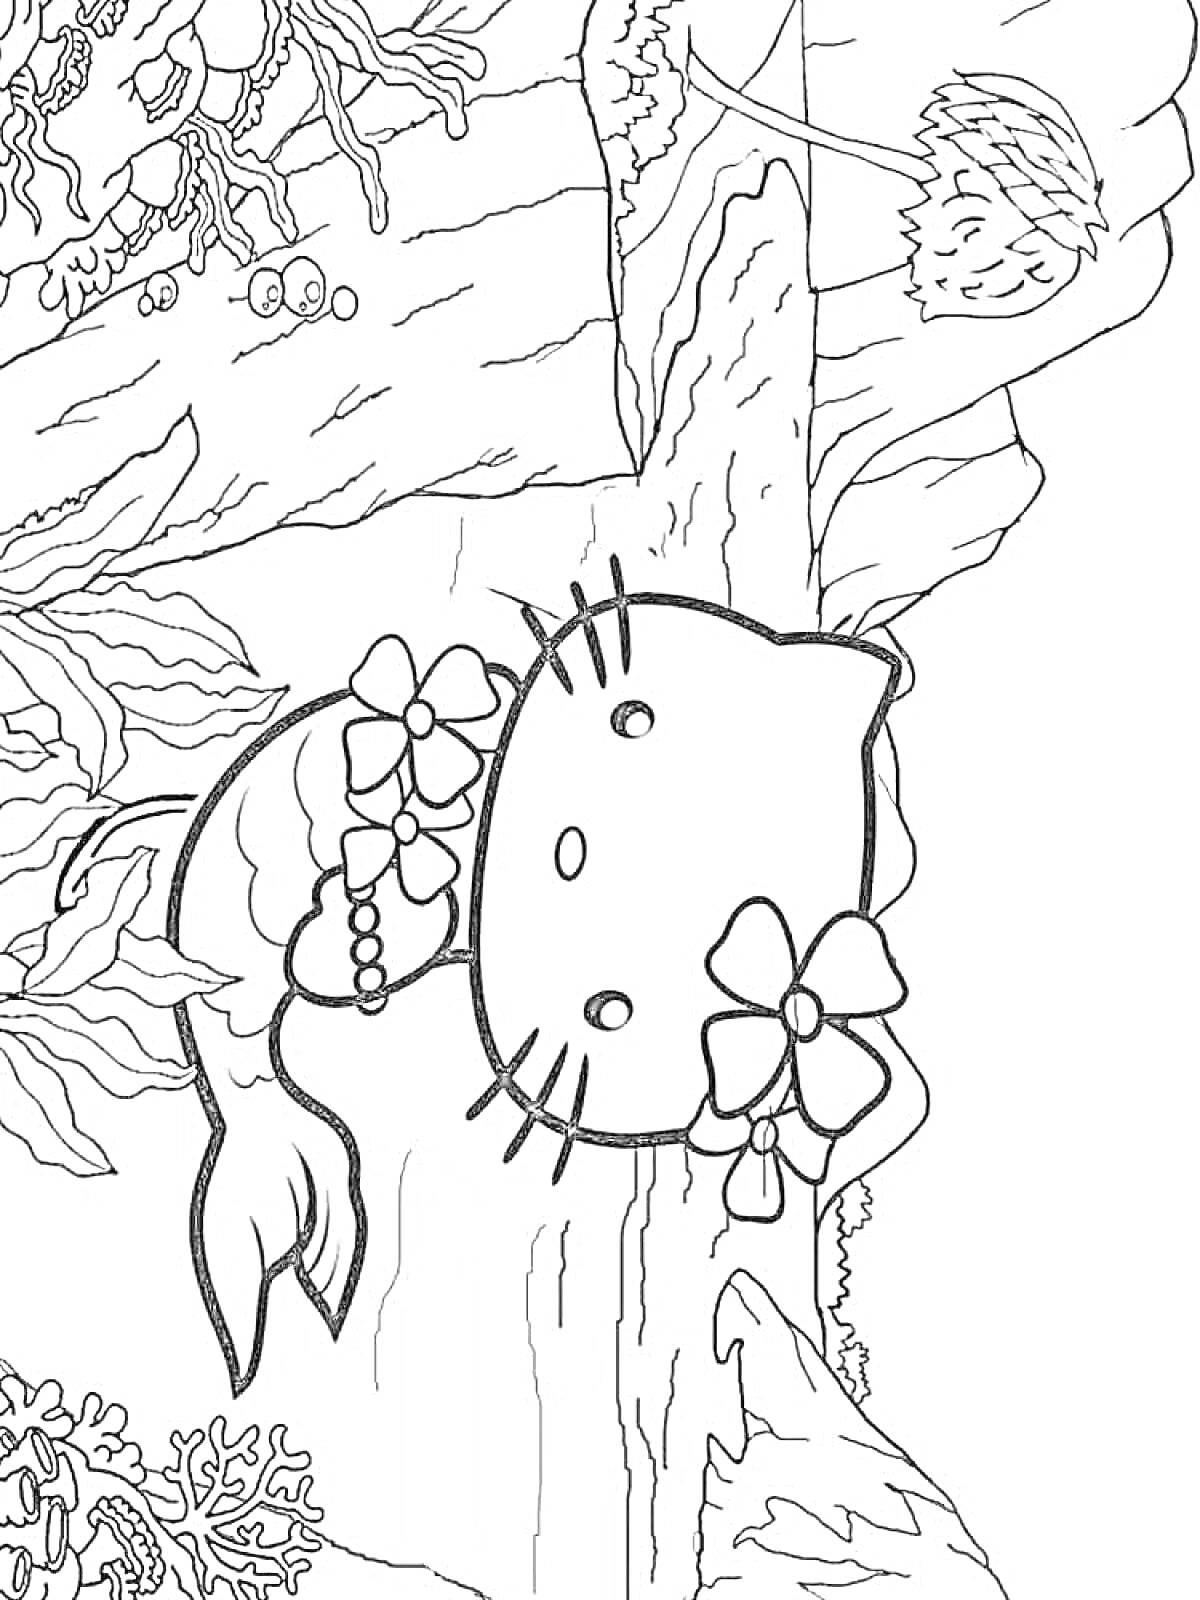 Раскраска Кошка русалка со взрослым и детенышем рыб вокруг, водорослями, цветком на фоне подводного мира.